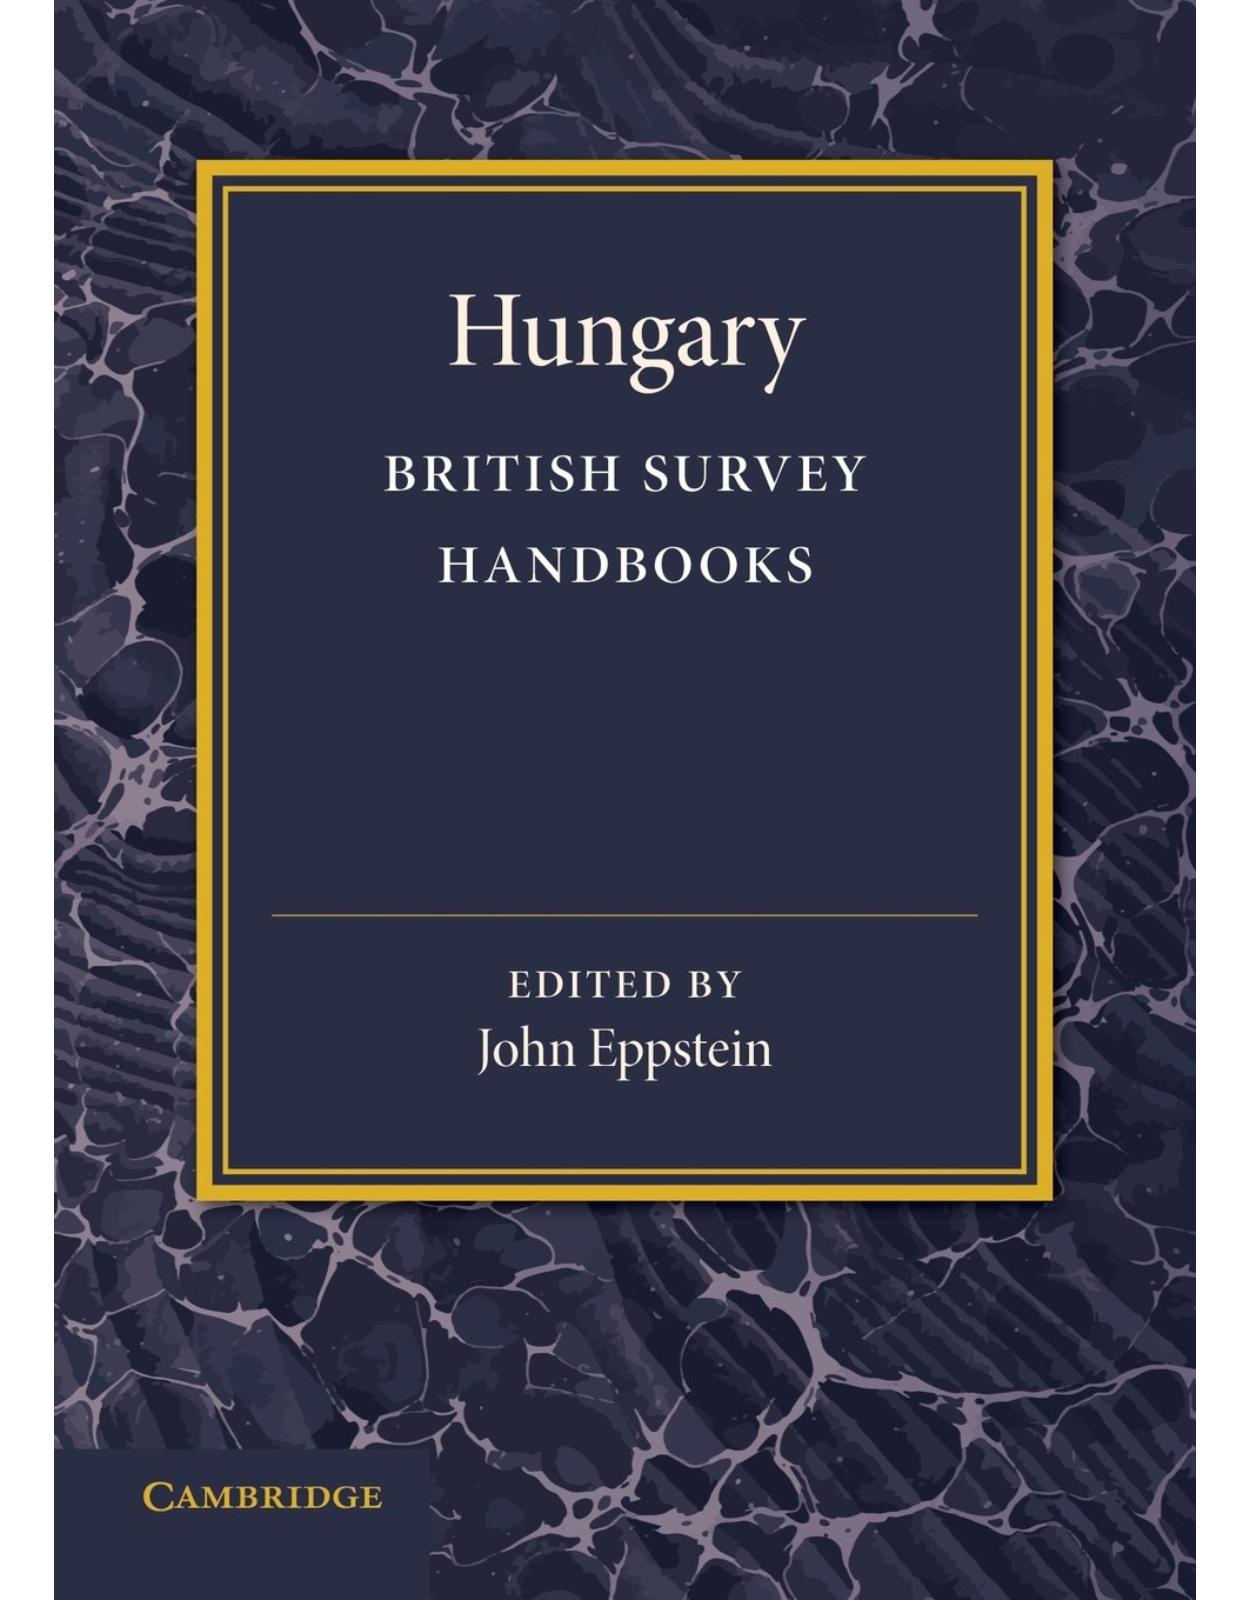 Hungary (British Survey Handbooks)